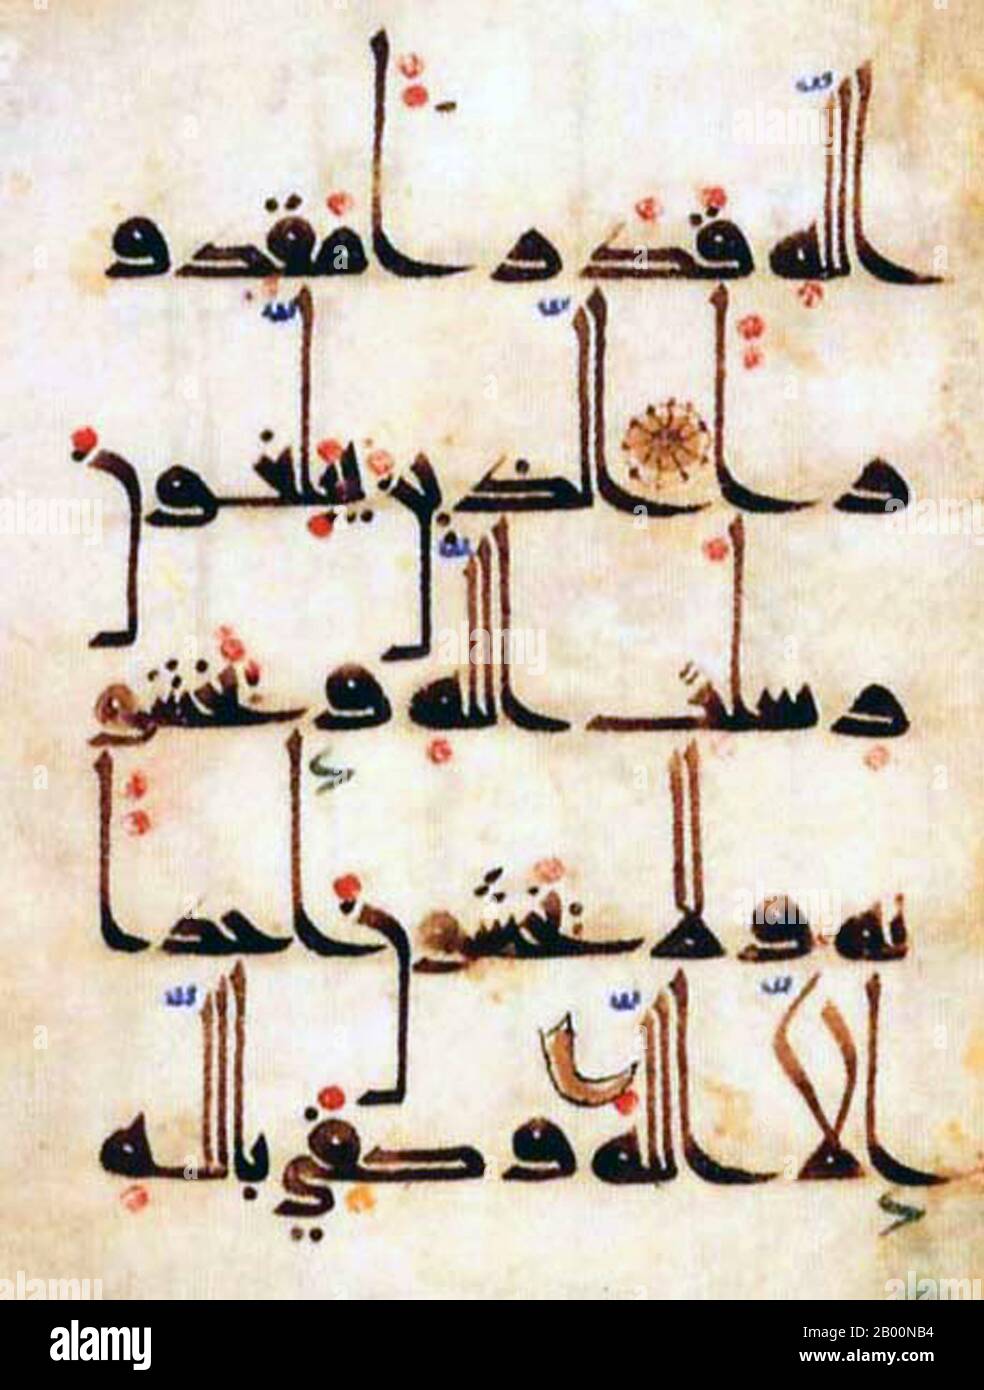 Arabisch Kalligrafisch Stockfotos Und Bilder Kaufen Alamy